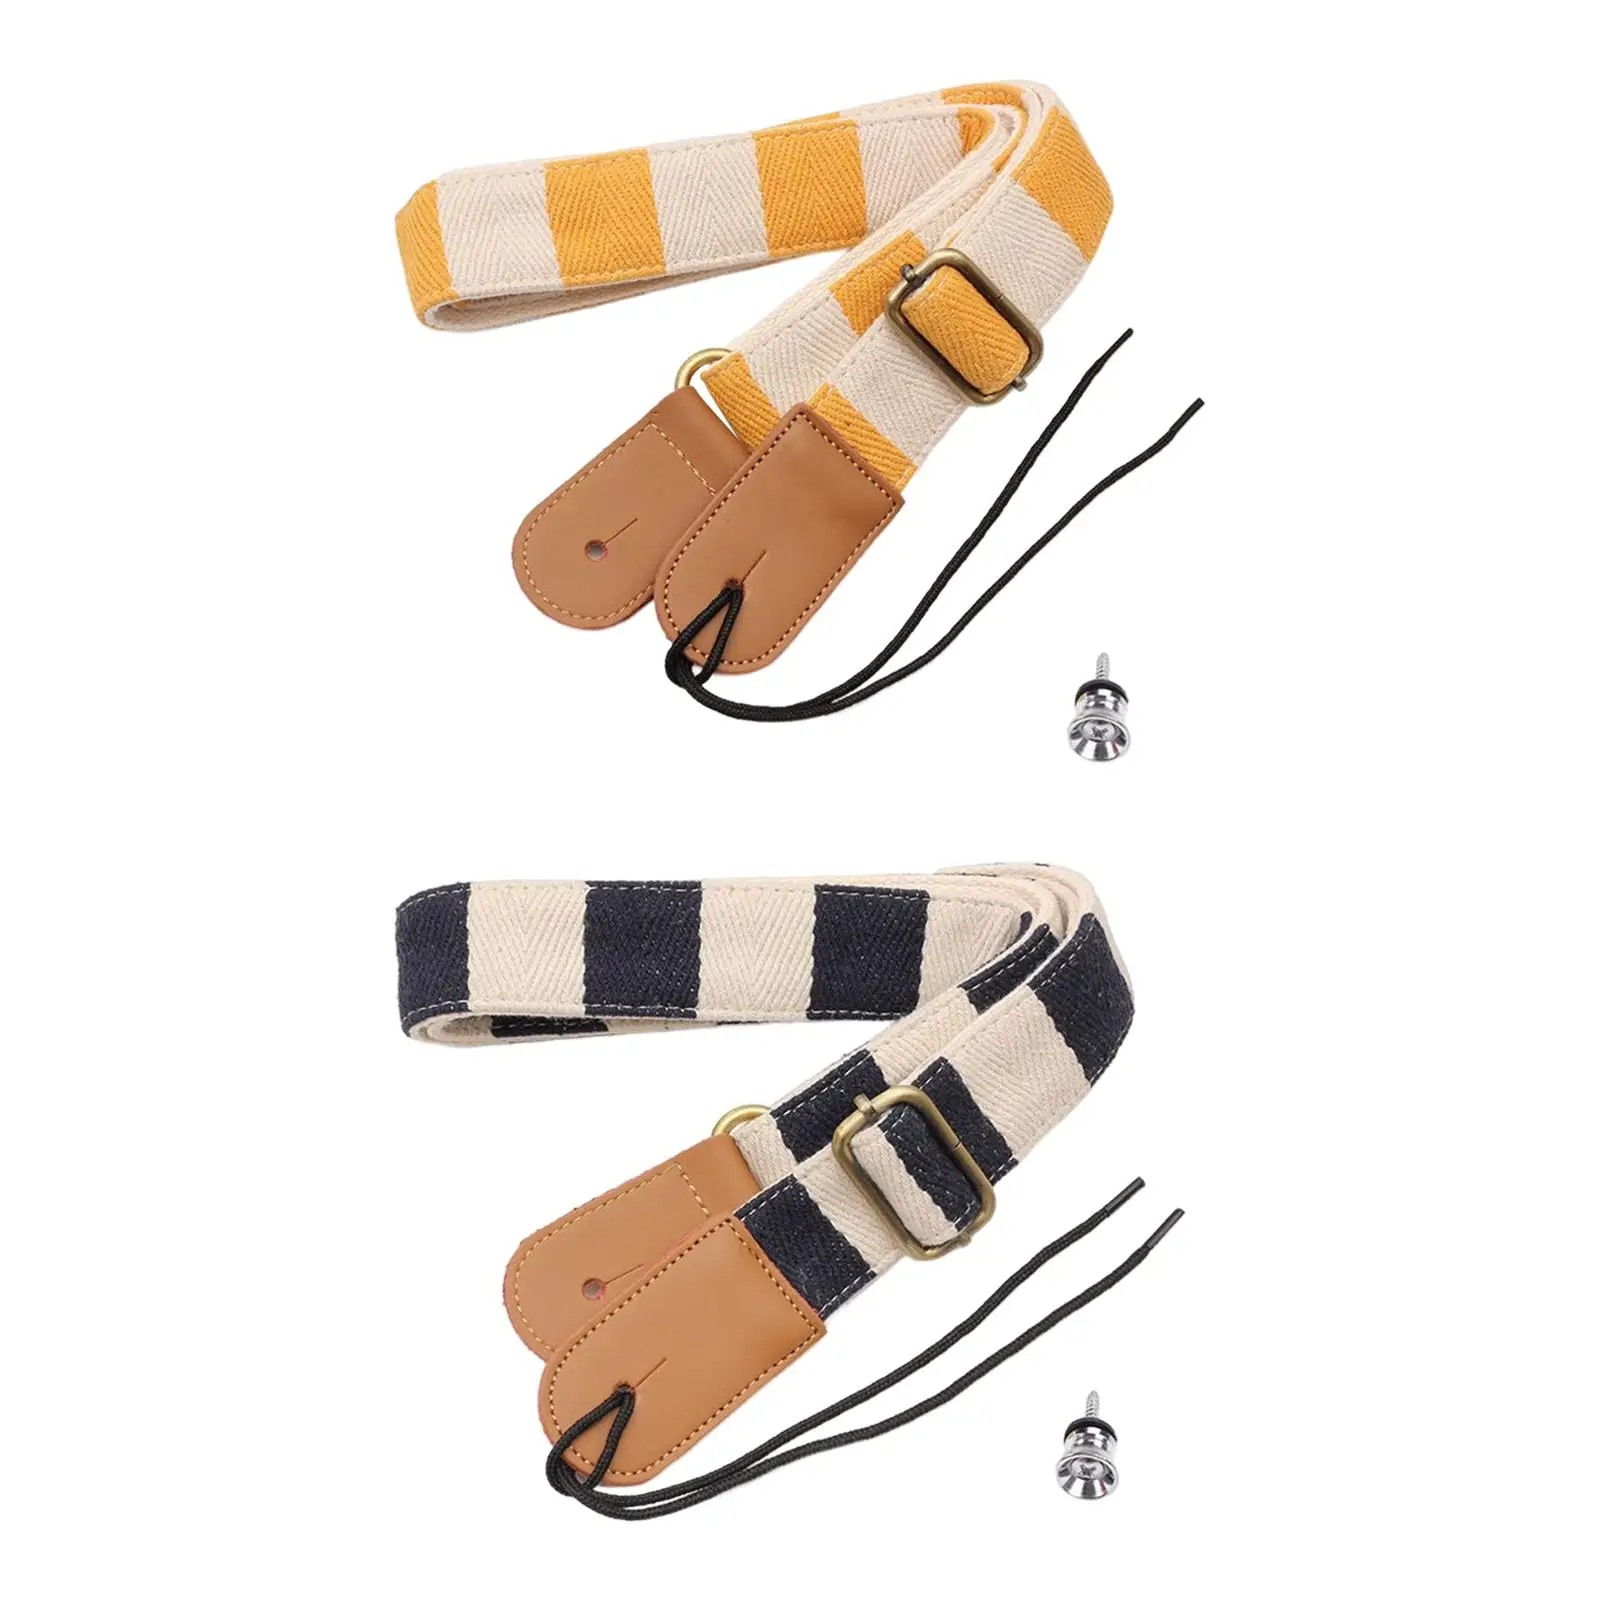 Ukulele Strap Fashionable Practical Lanyard Gifts Multipurpose Stringed Instrument Accessory